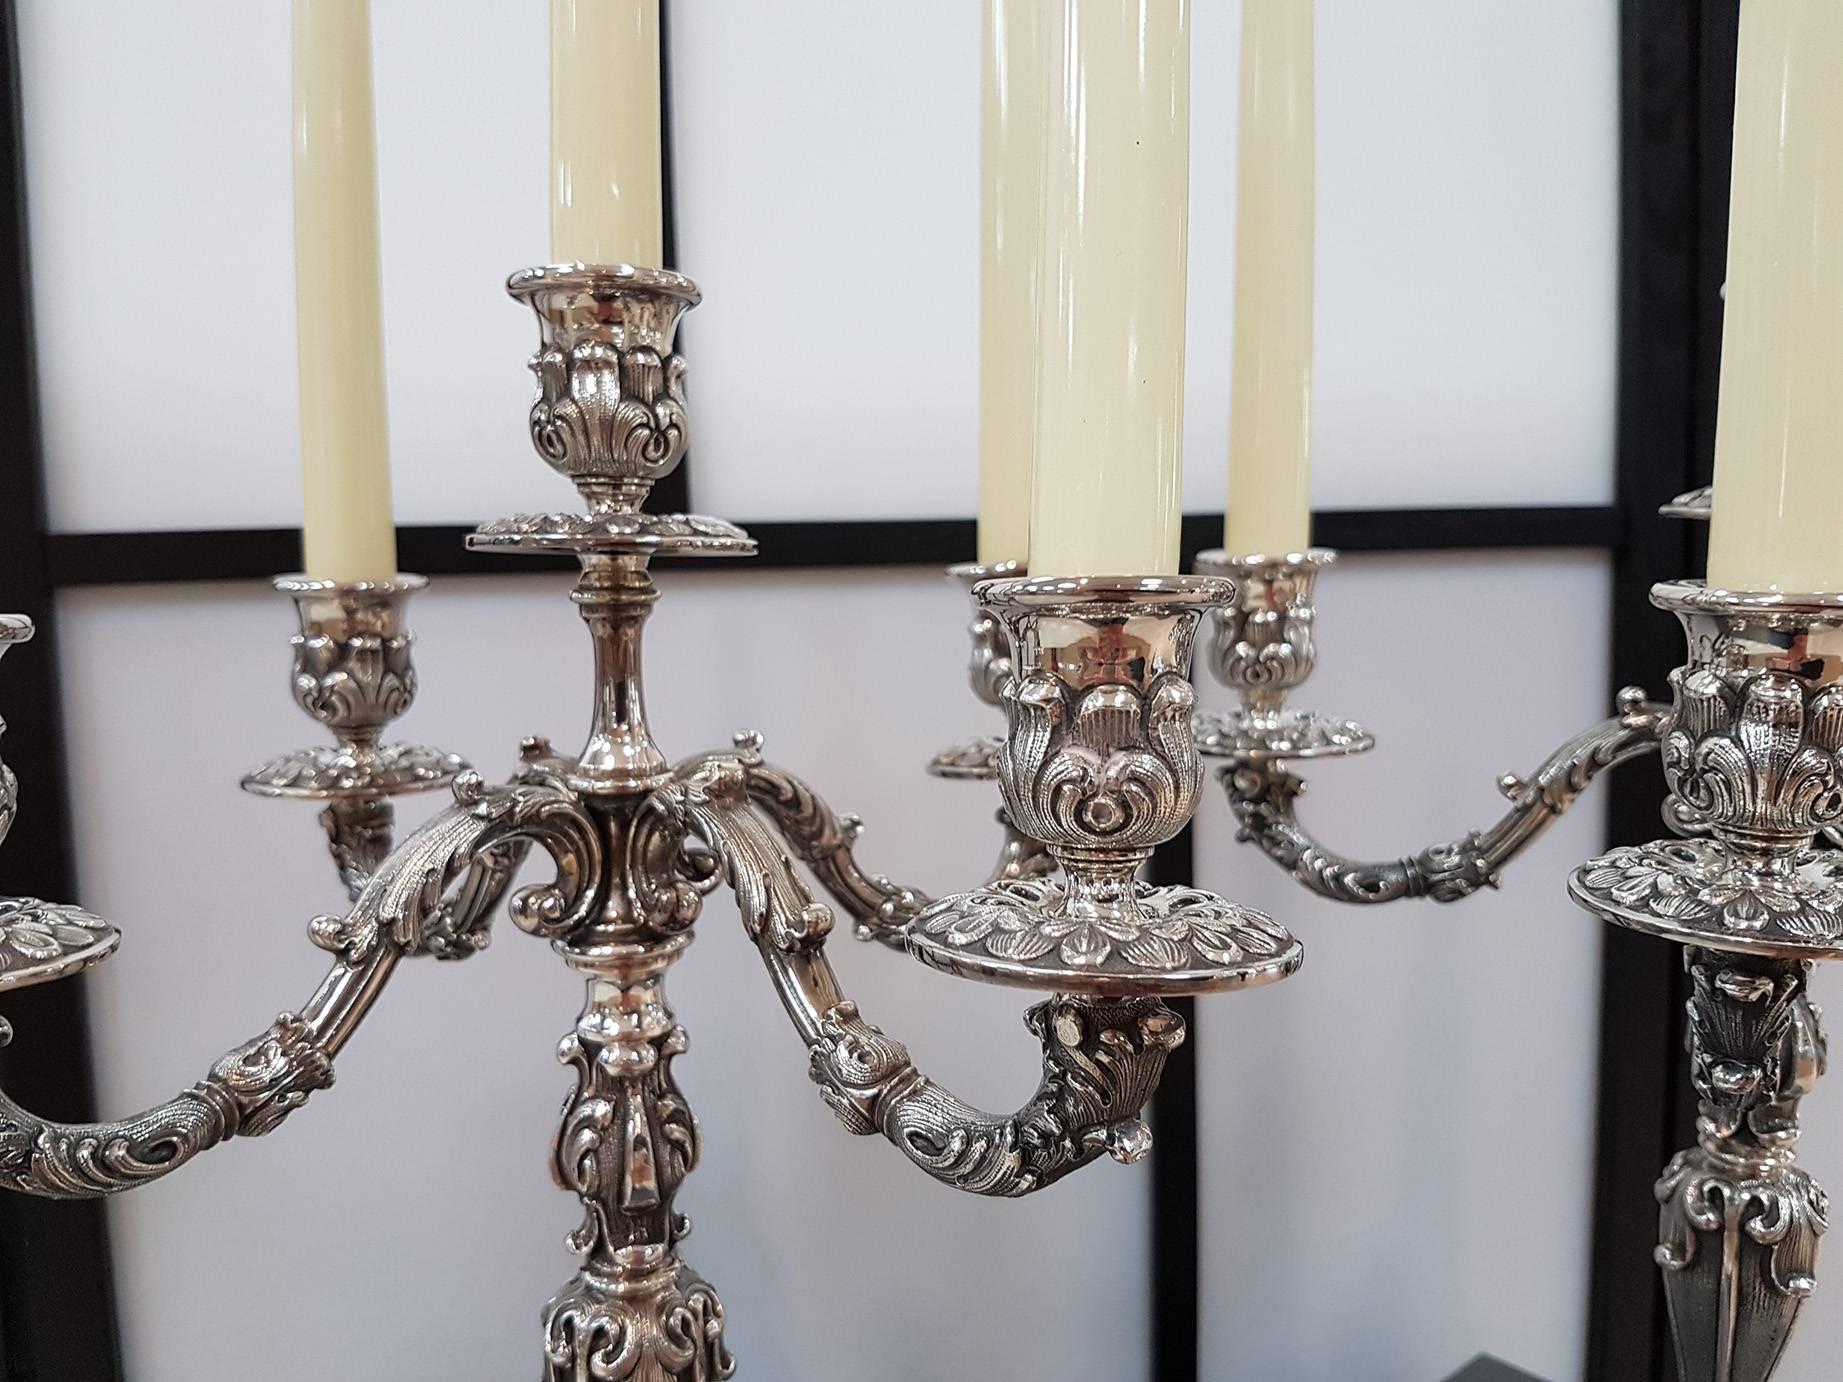 Pr. von italienischen Barocco Wiederbelebung fünf Licht Kandelaber. 
Diese Kerzenständer sind das Ergebnis der hervorragenden italienischen Handwerkskunst
die bis zur Perfektion Details und Design-Balancen heilt

5.300 Gramm.